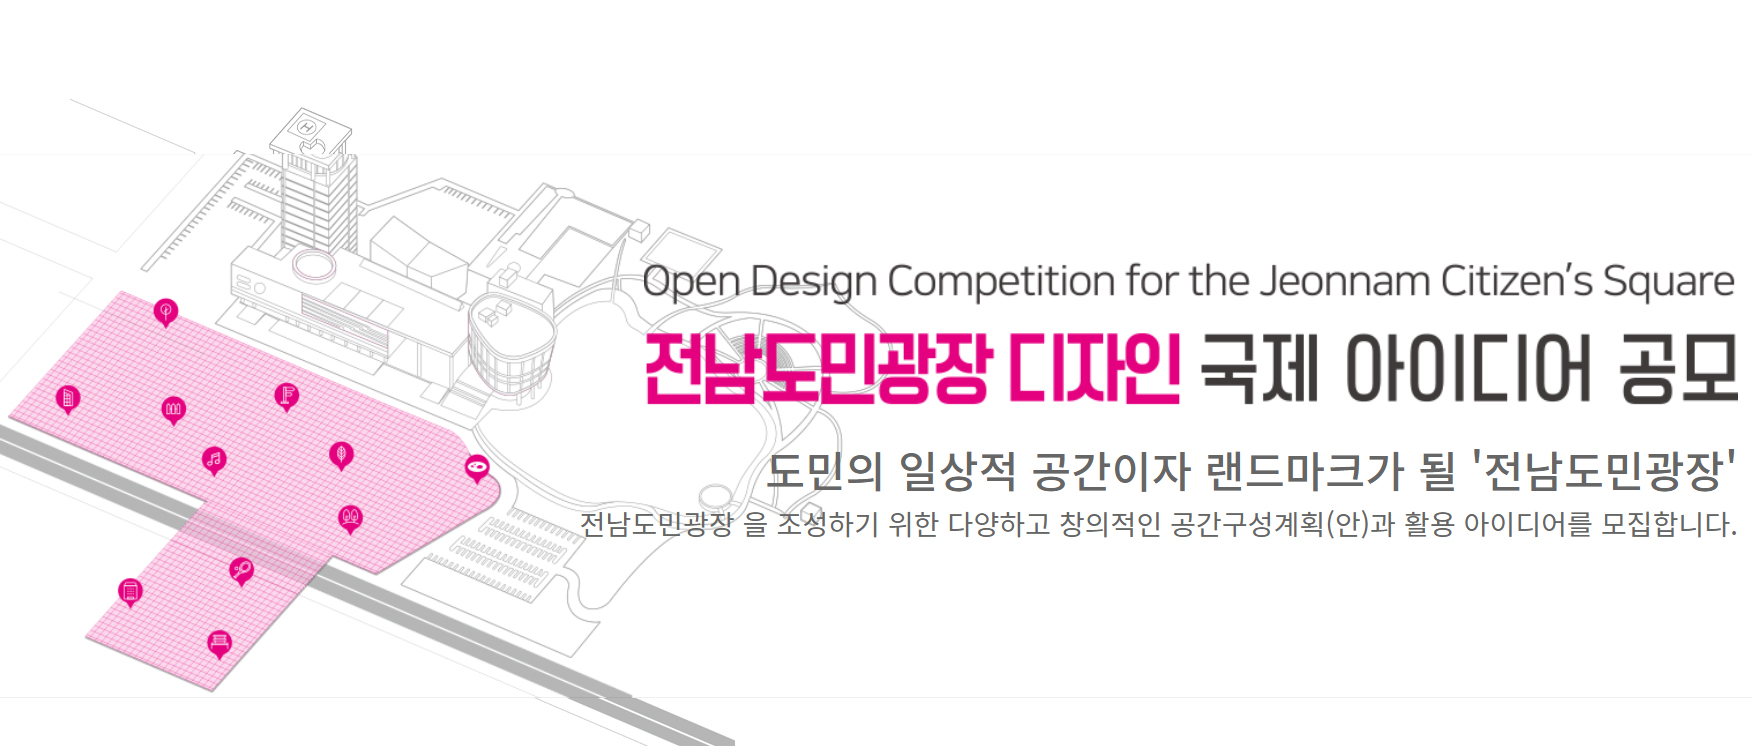 韩国全南市民广场公开设计竞赛